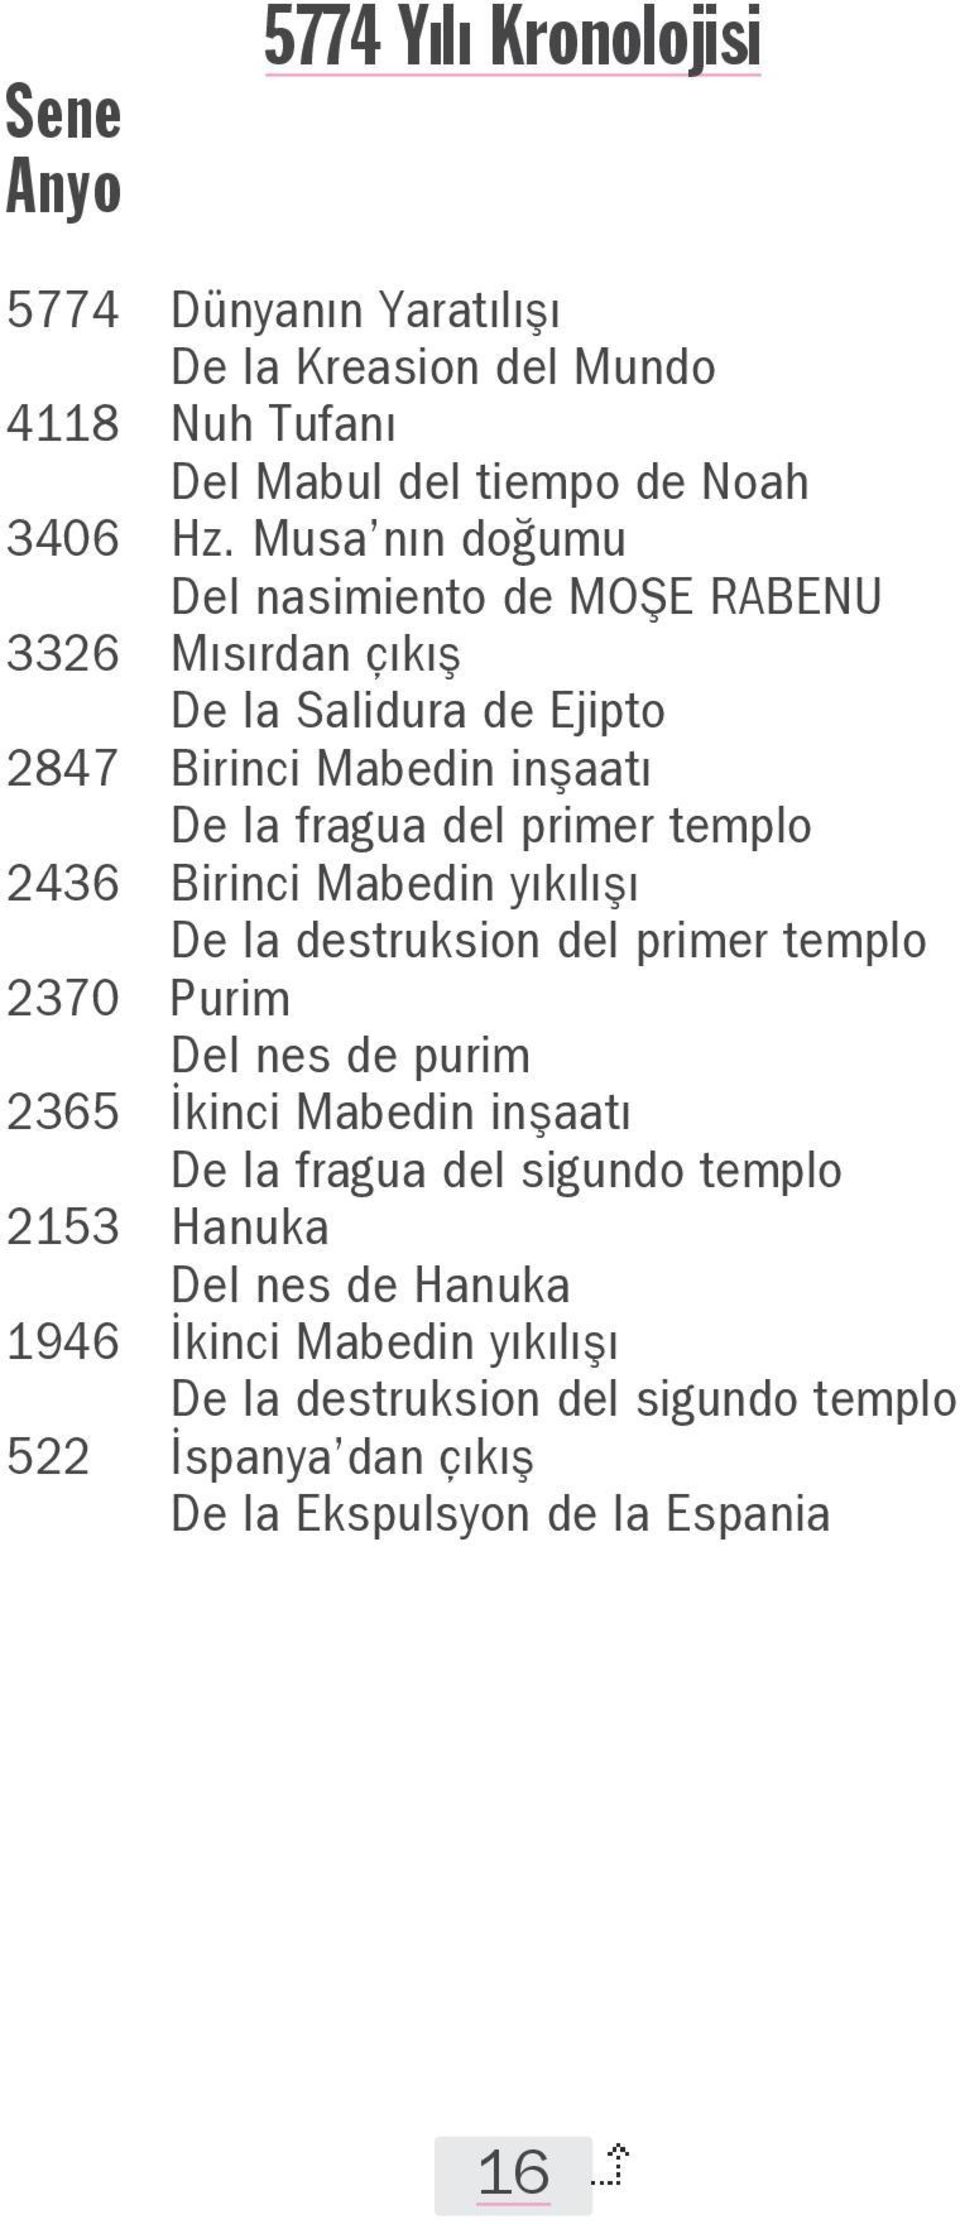 templo 2436 Birinci Mabedin yıkılışı De la destruksion del primer templo 2370 Purim Del nes de purim 2365 İkinci Mabedin inşaatı De la fragua del